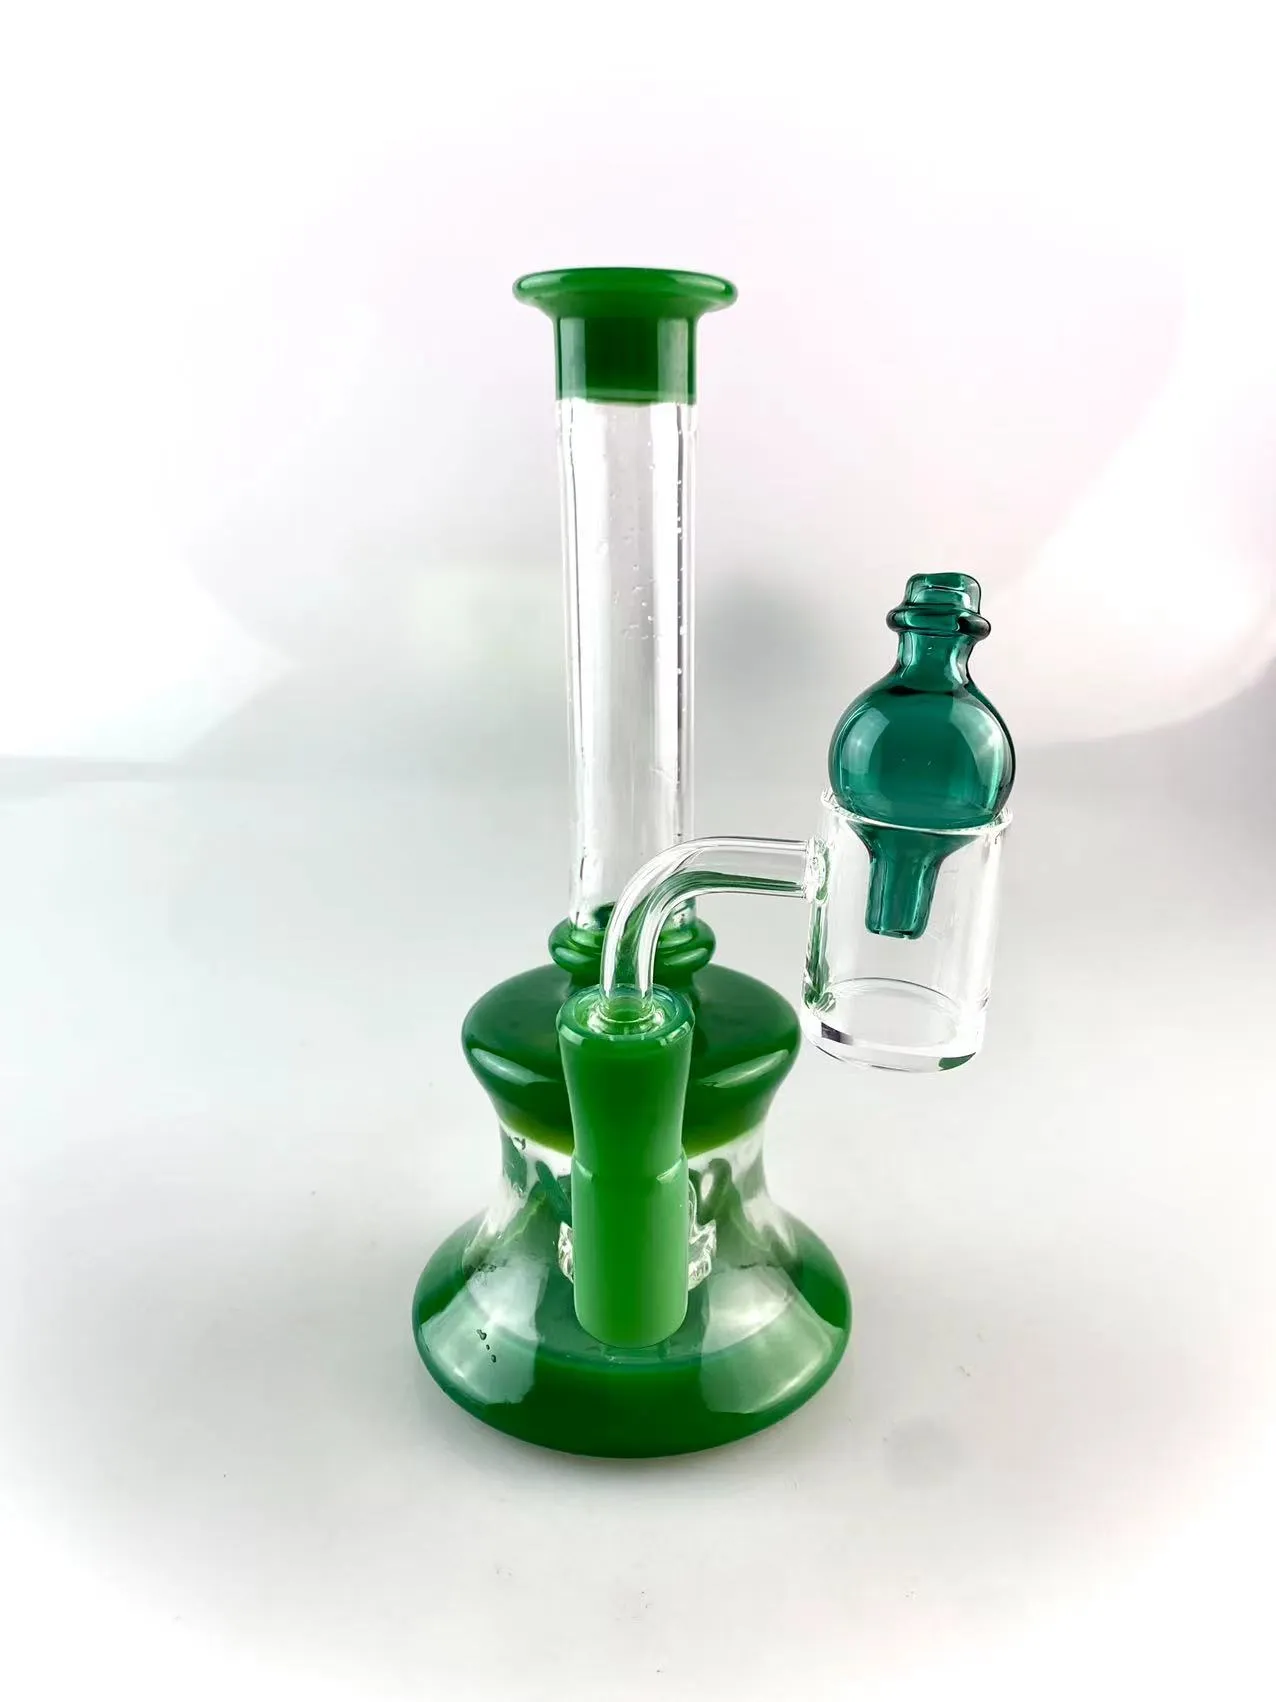 Reciclador de vidro para cachimbo de água, china verde, colorido, 6,5 polegadas de altura, junta de 14 mm, adicione um banger, uma tampa de bolha verde lago